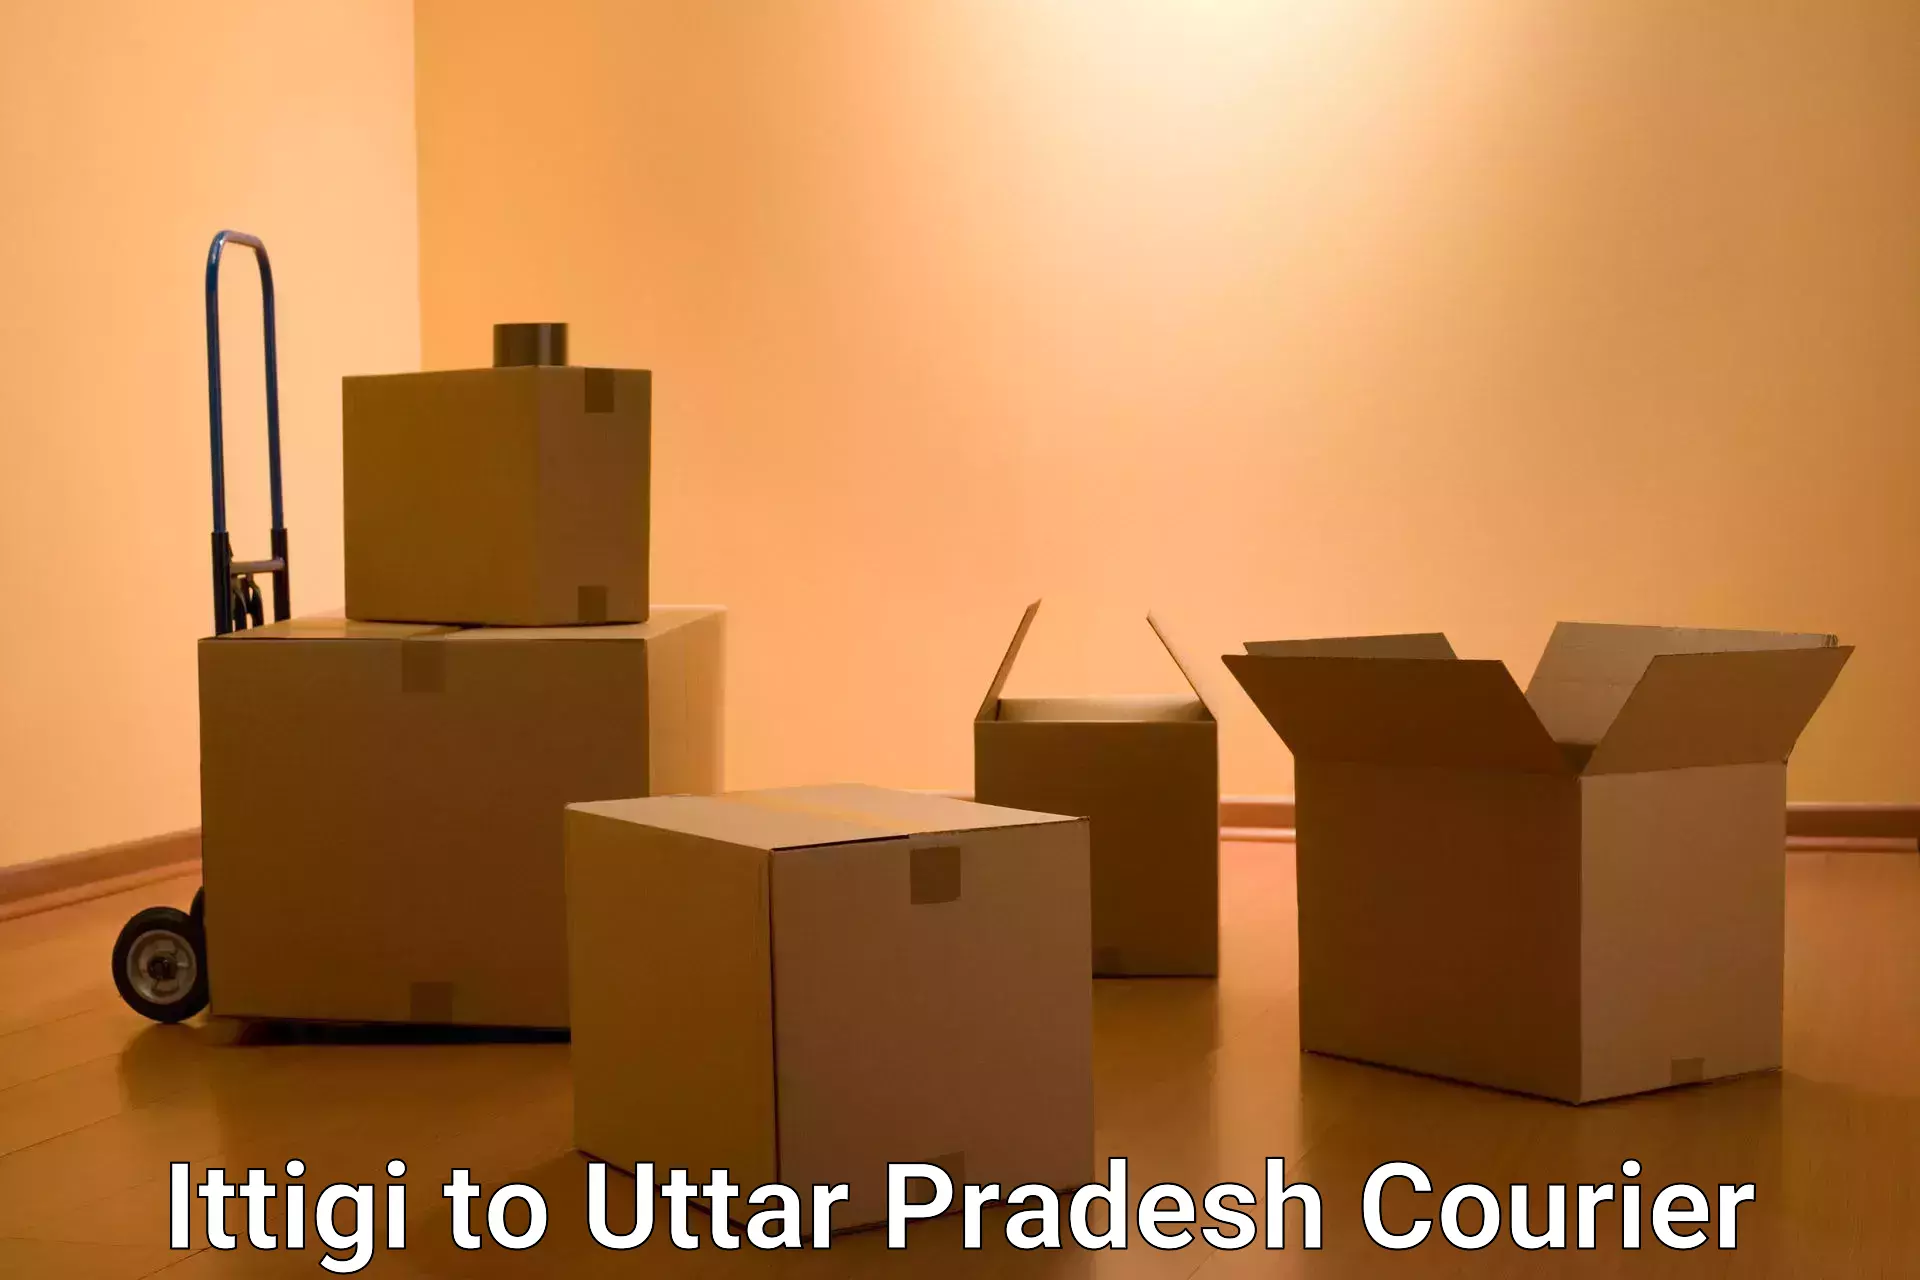 User-friendly delivery service Ittigi to Uttar Pradesh